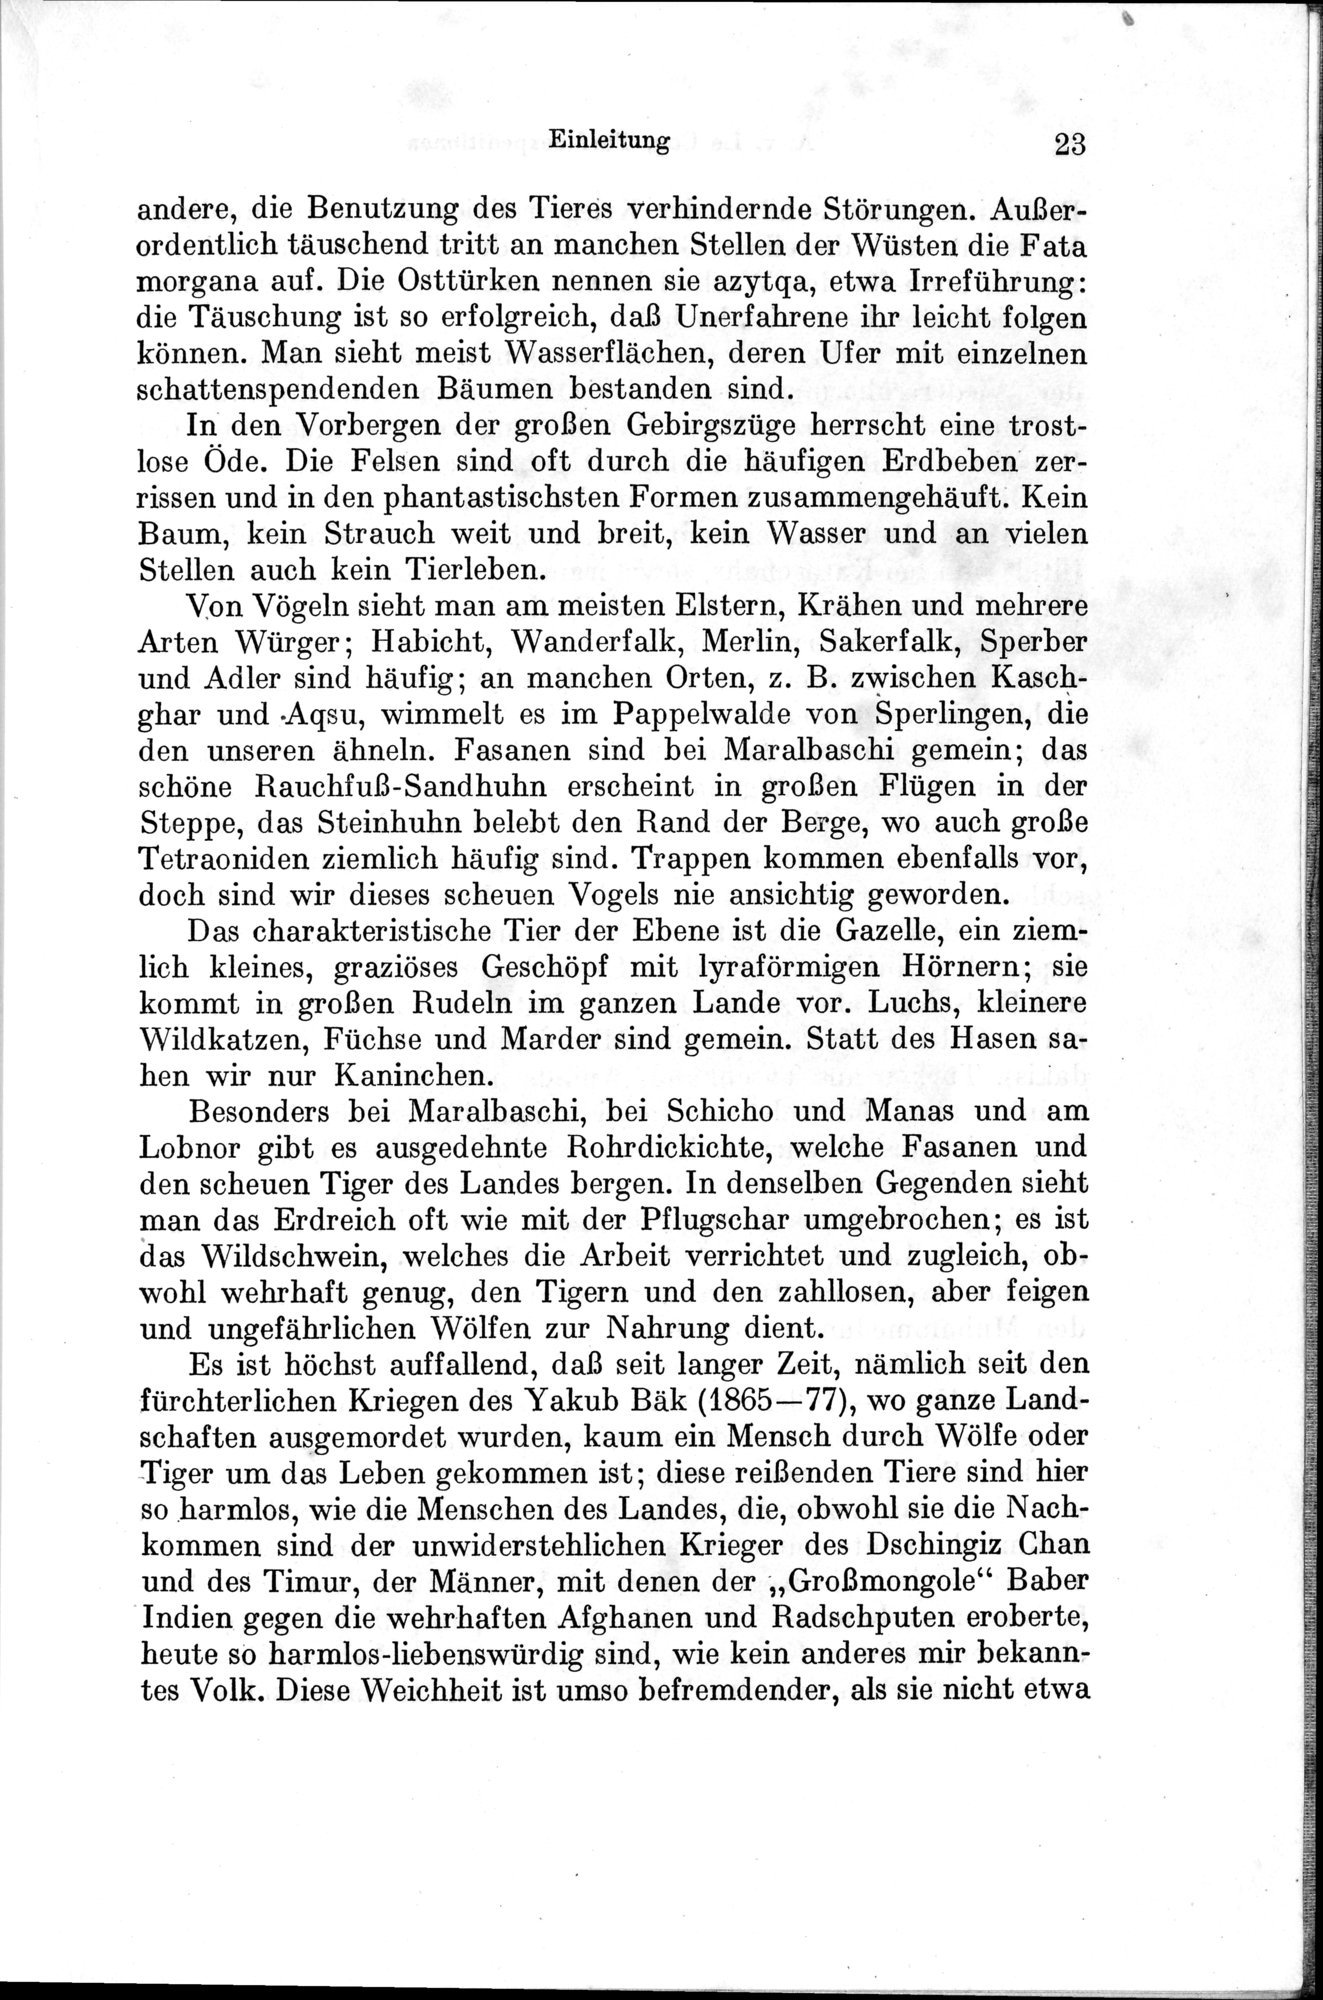 Auf Hellas Spuren in Ostturkistan : vol.1 / Page 39 (Grayscale High Resolution Image)